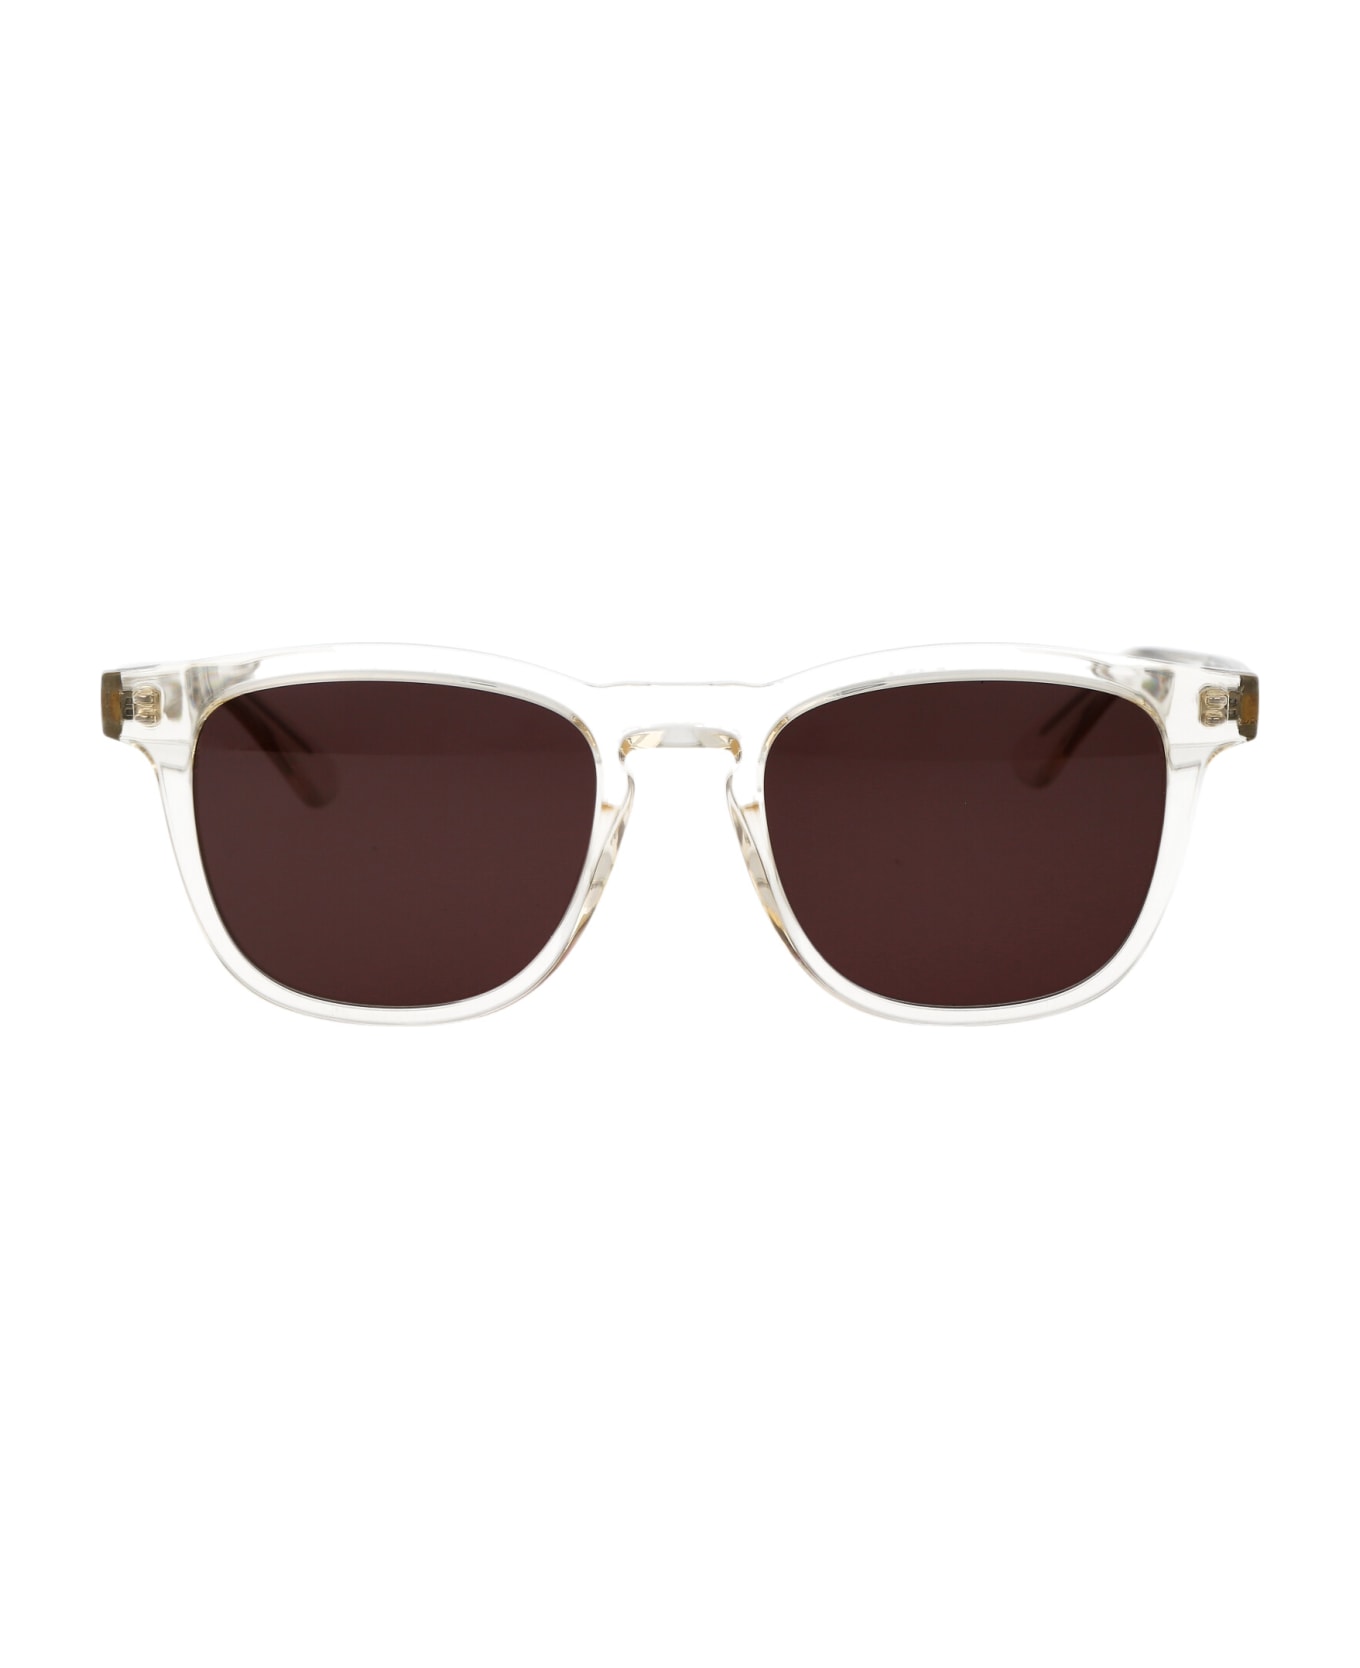 Calvin Klein Ck23505s Sunglasses - 272 SAND サングラス